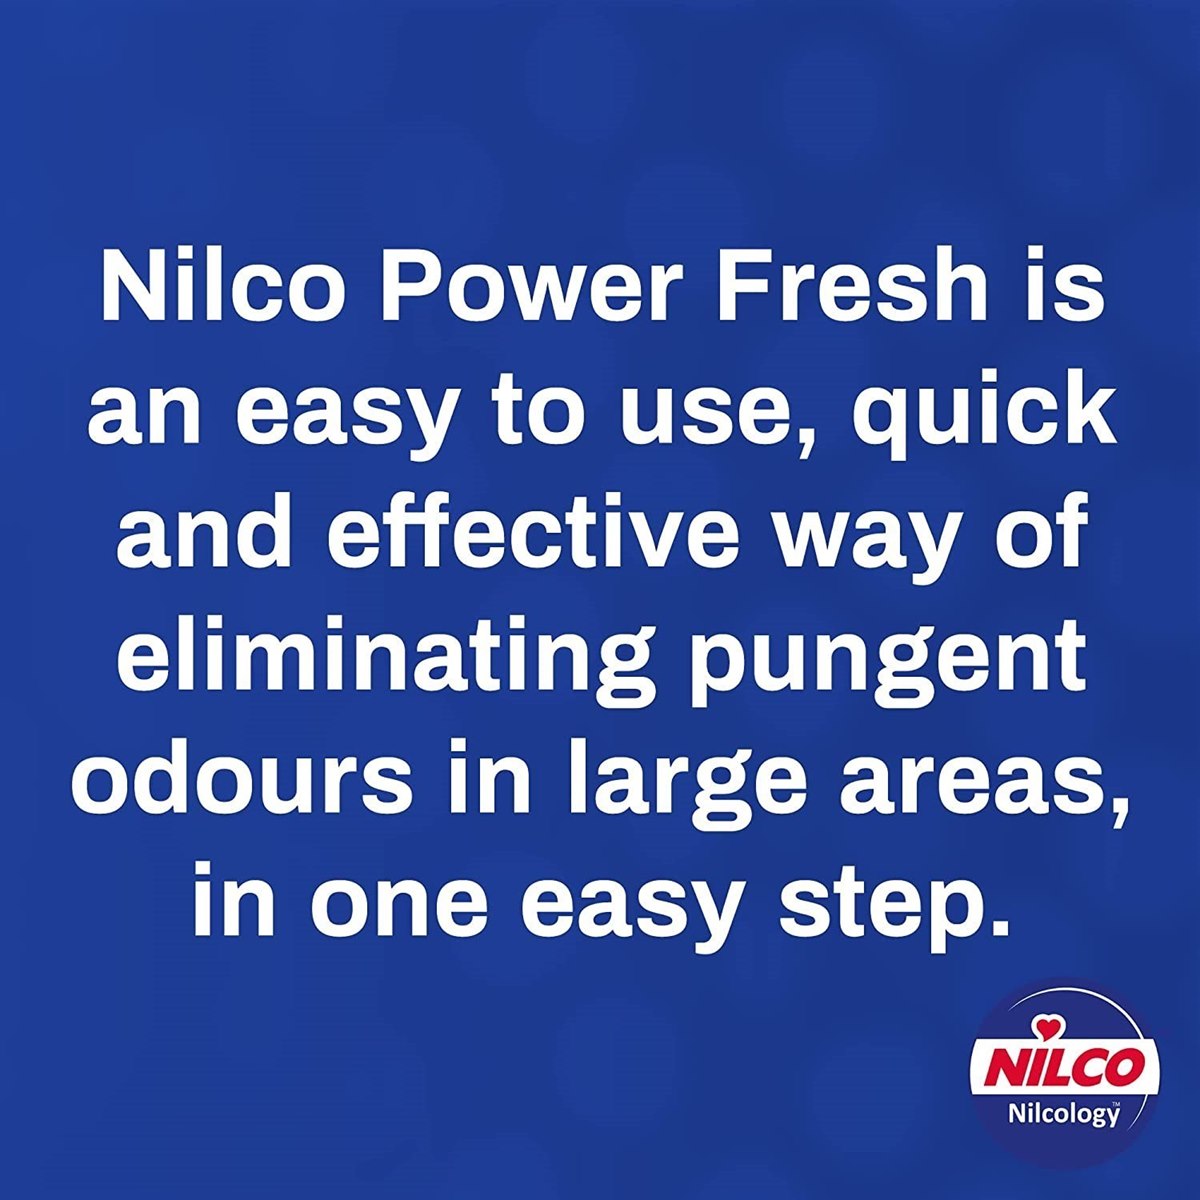 Where to Buy Nilco Power Fresh Spray